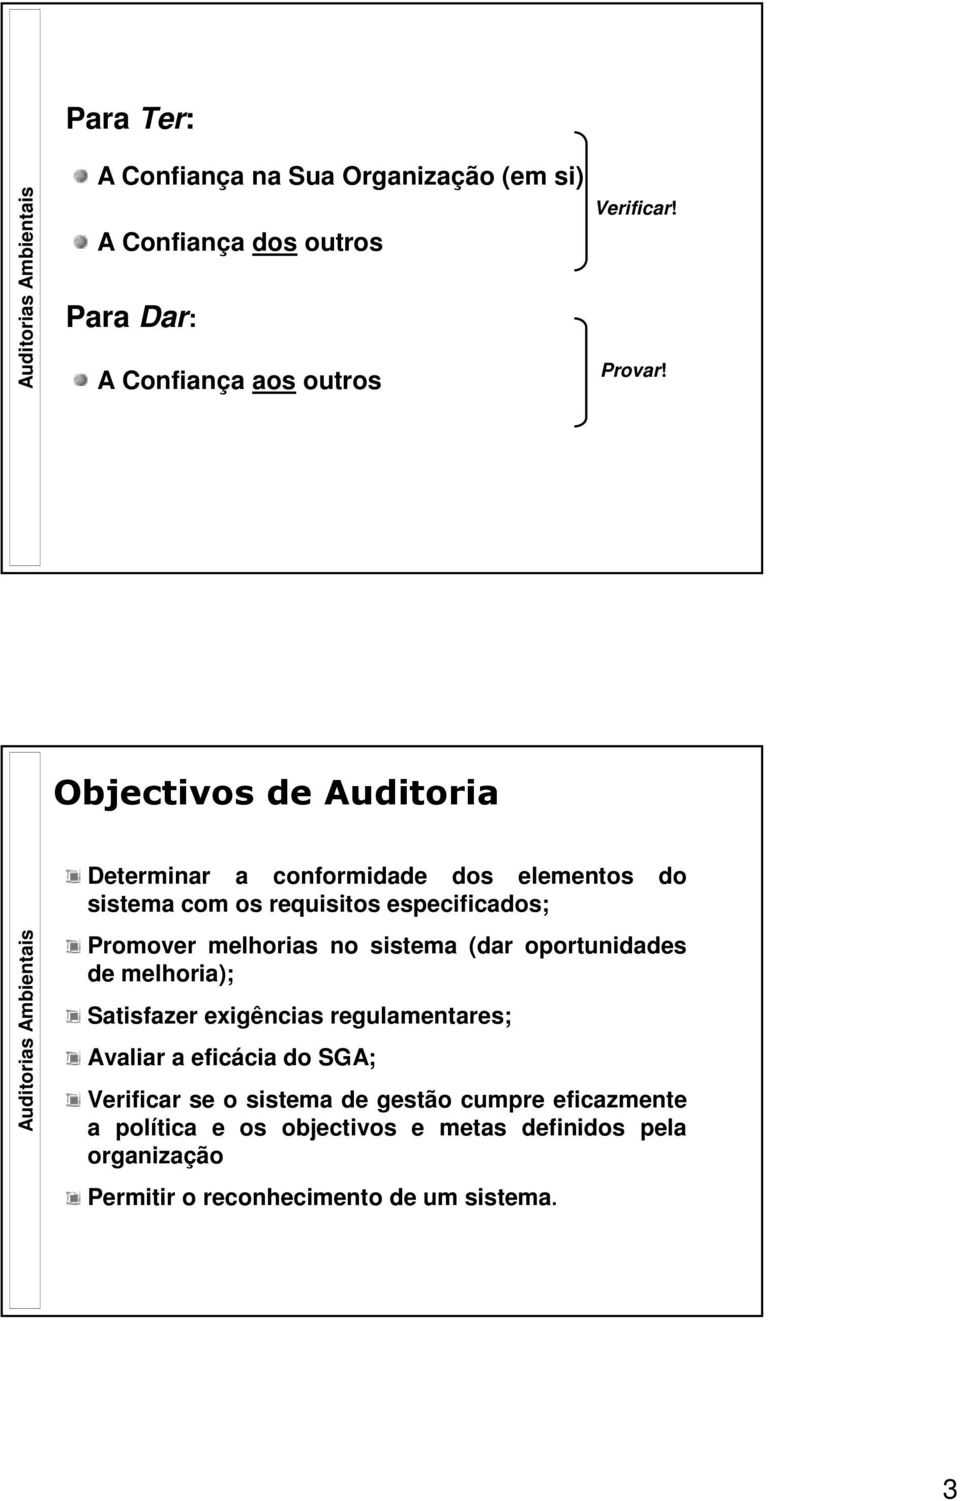 Objectivos de Auditoria Auditorias Ambientais Determinar a conformidade dos elementos do sistema com os requisitos especificados; Promover